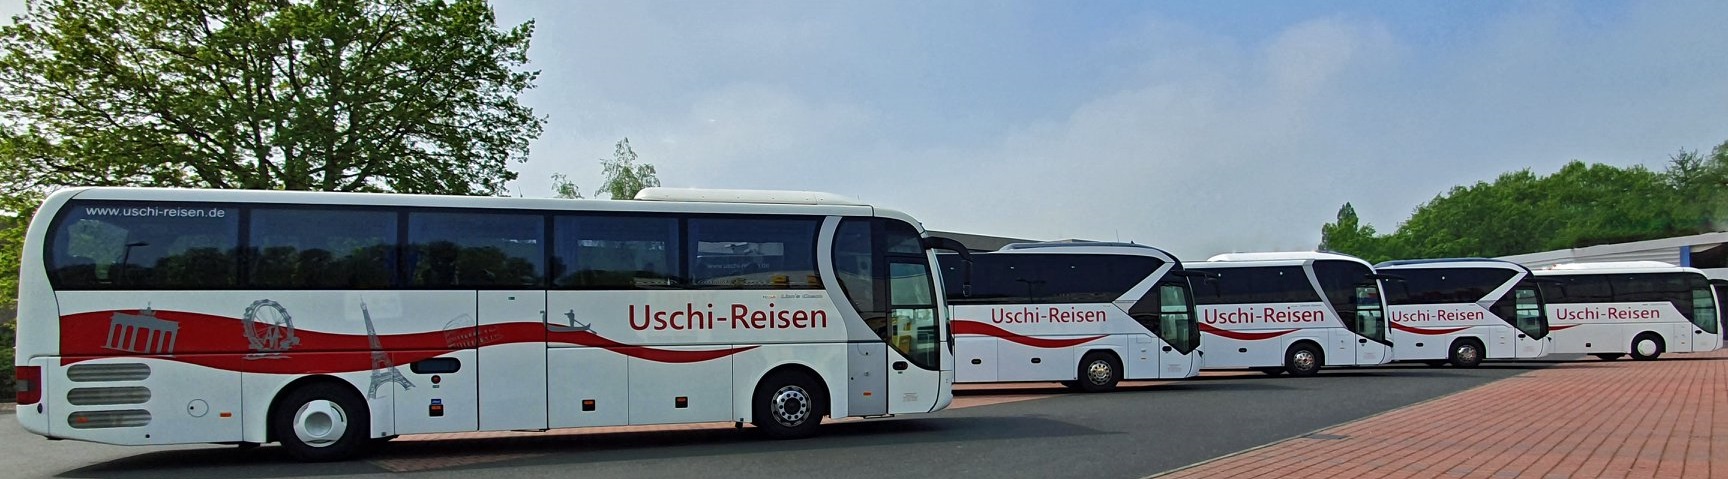 Busflotte von Uschi-Reisen